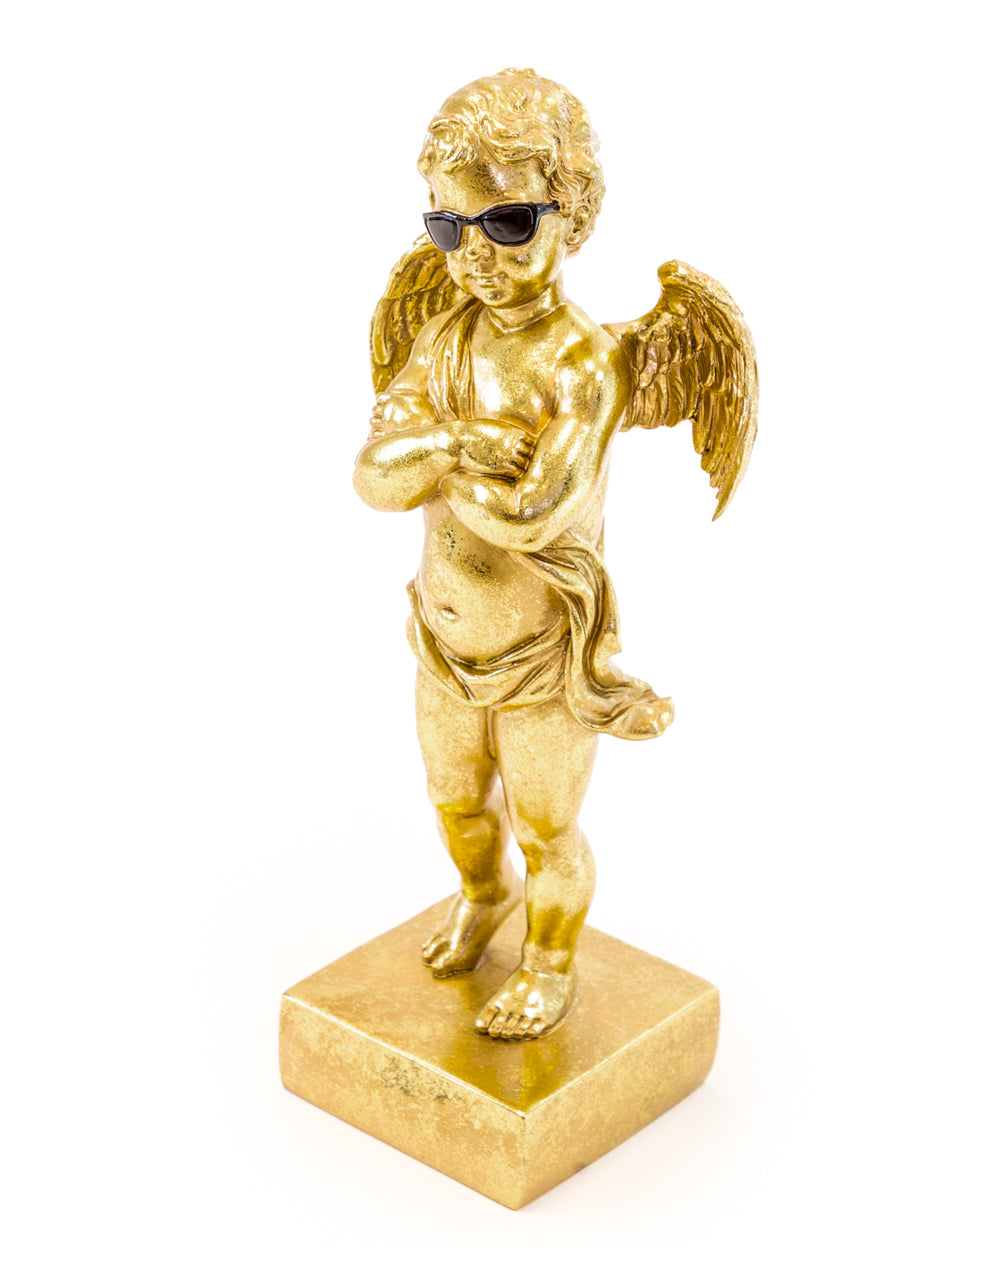 Gold "Too Cool" Cherub Figure on Base